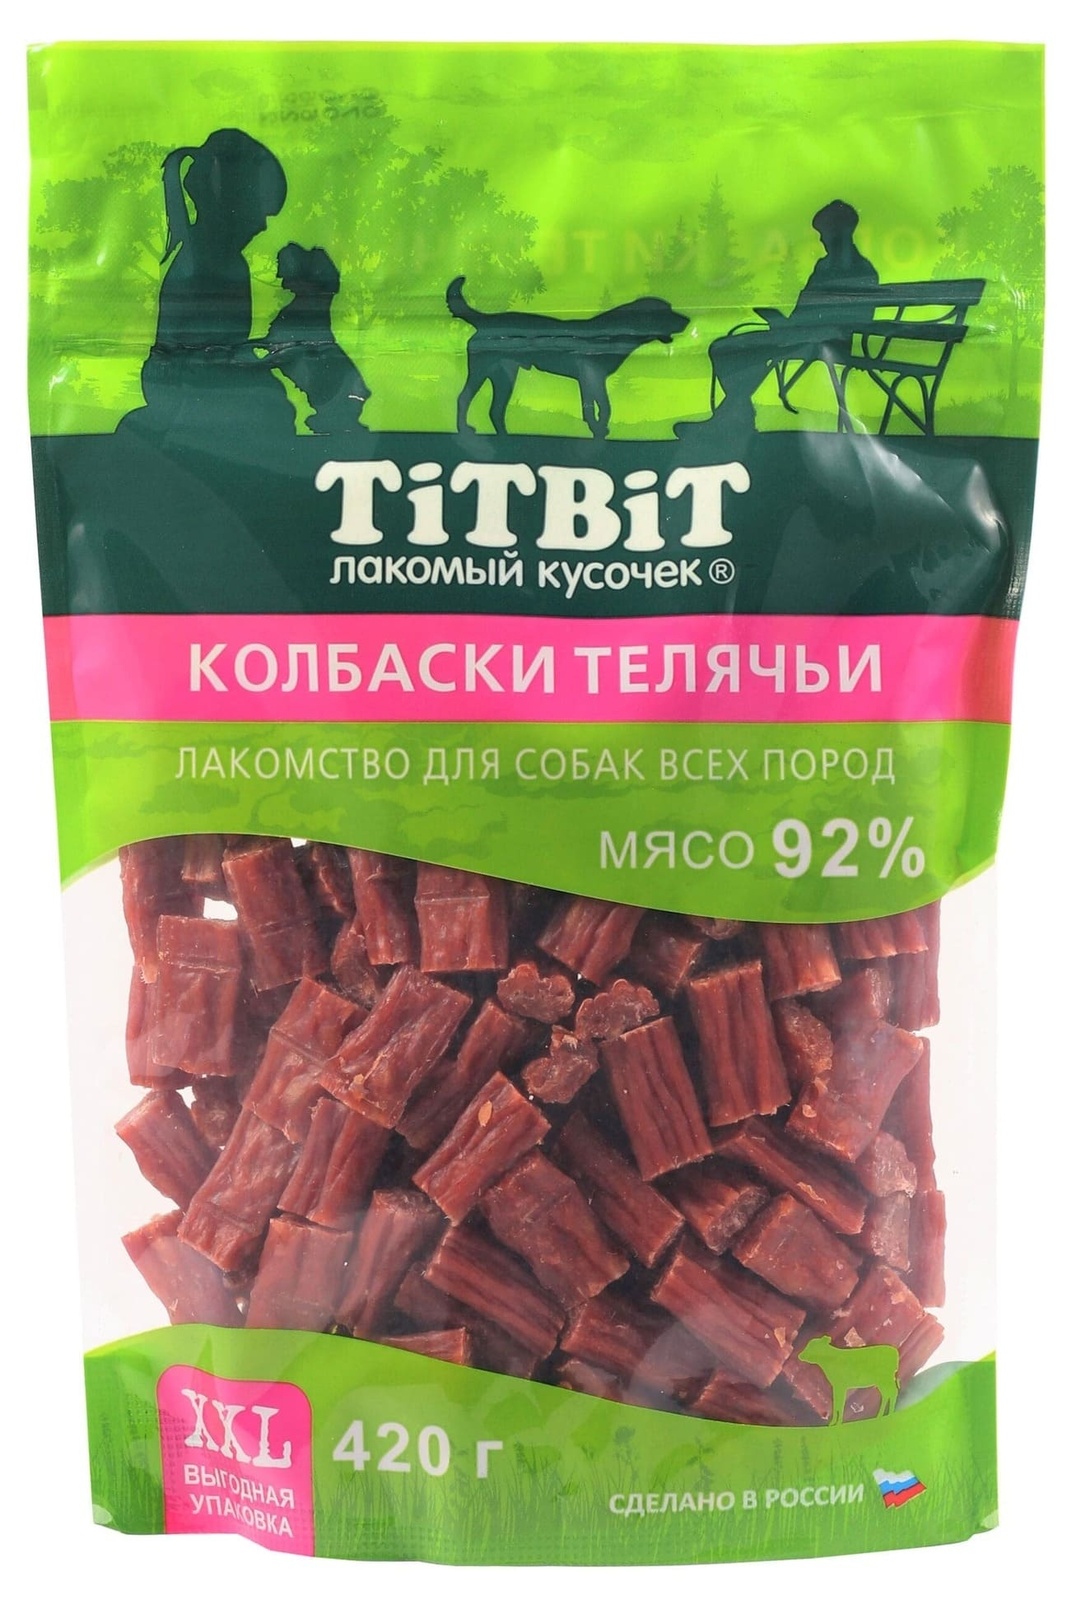 TiTBiT TiTBiT колбаски телячьи для собак всех пород, выгодная упаковка XXL (420 г) лакомство для собак titbit палочки колбасные 550г xxl выгодная упаковка